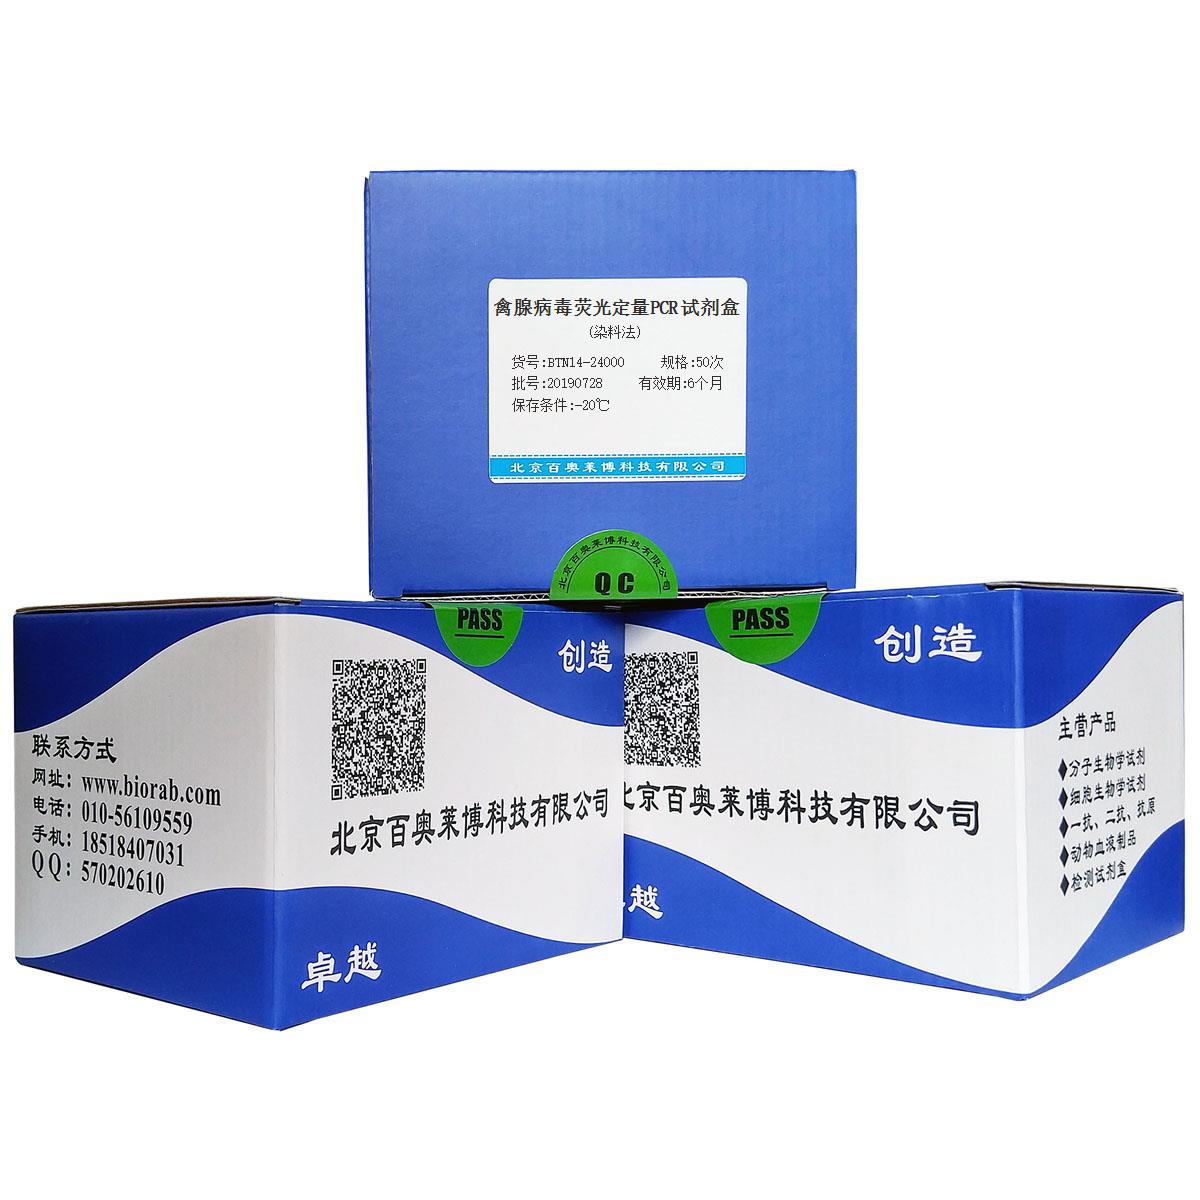 禽腺病毒荧光定量PCR试剂盒(染料法)北京品牌